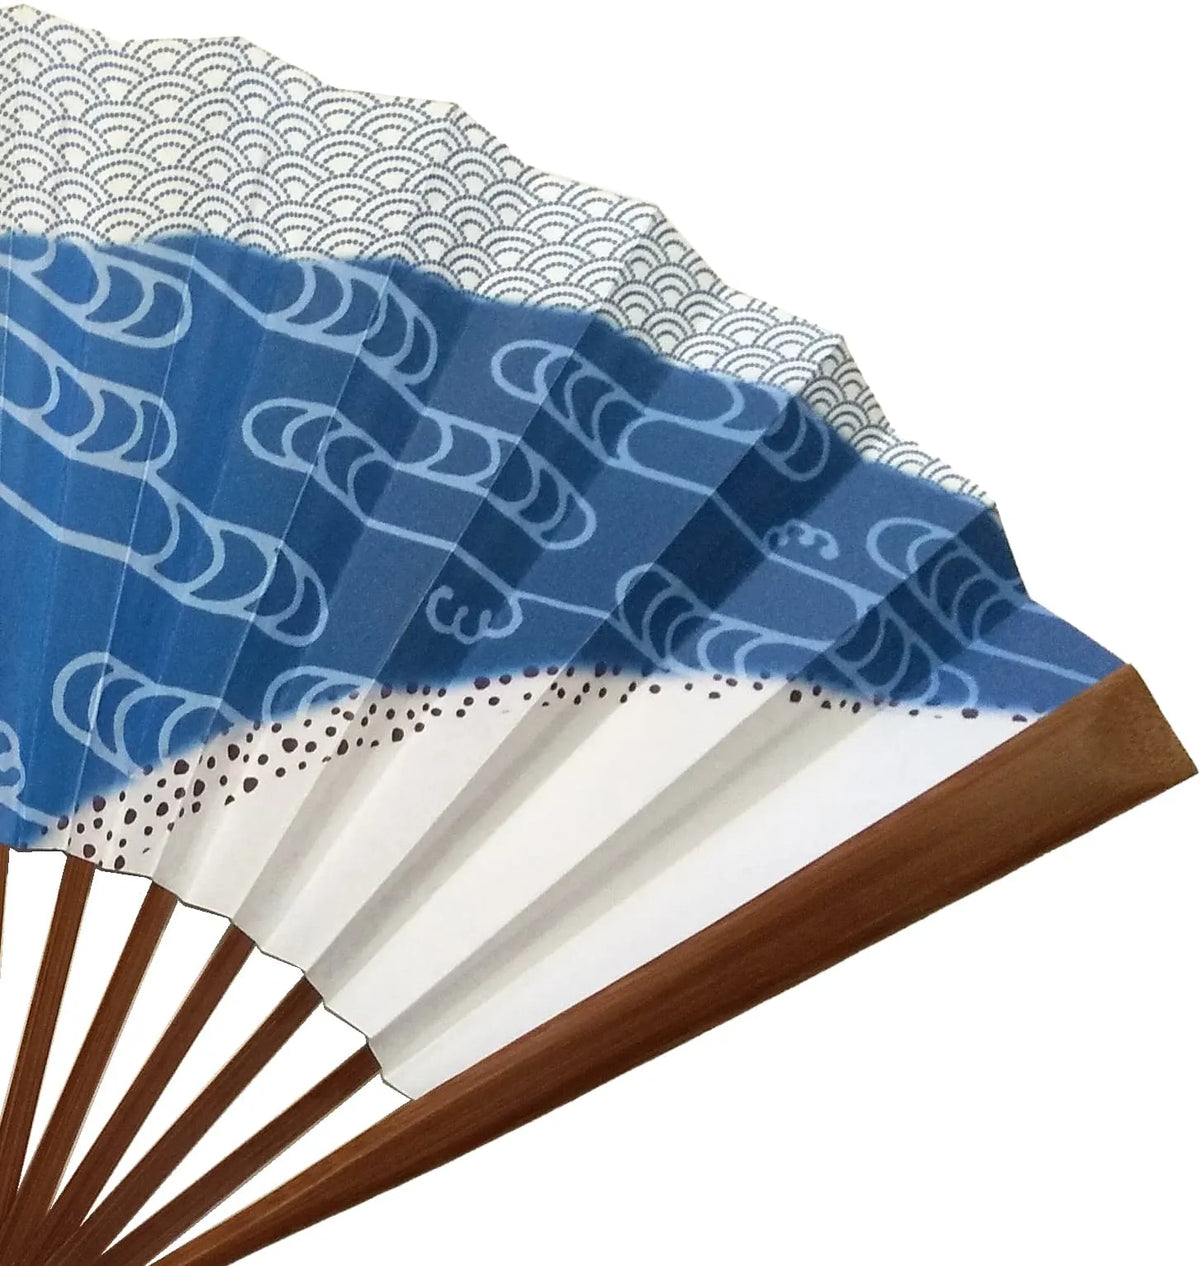 Edo Senko No.29 Double-sided Pattern Nami Chidori Blue Sea Wave